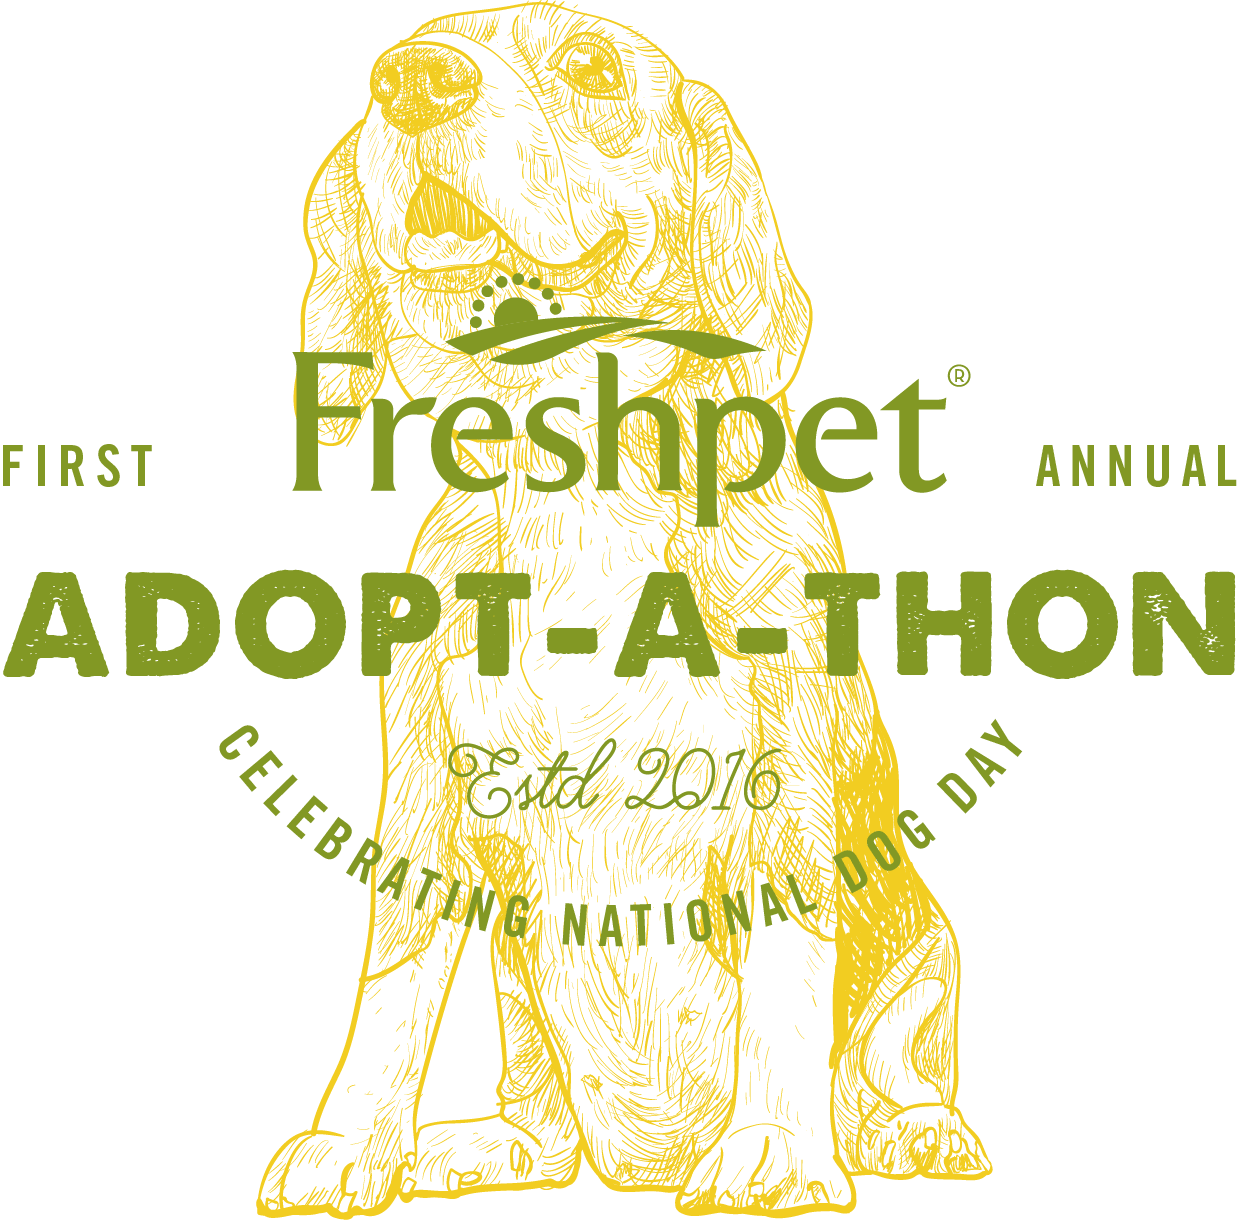 Отпразднуйте Национальный день собак с первым ежегодным ADOPT-A-THON